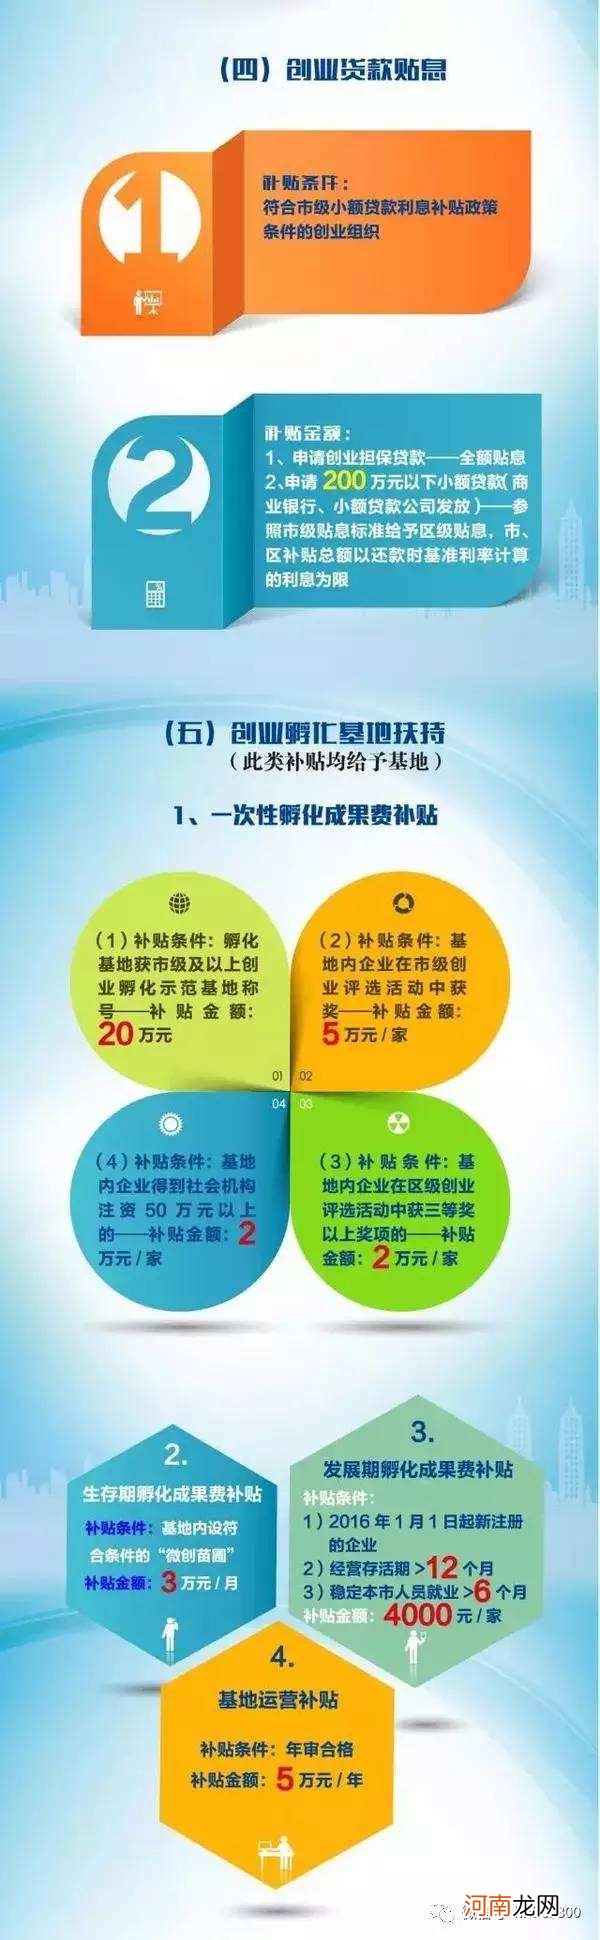 上海申请创业扶持补贴 上海申请创业扶持补贴多少钱